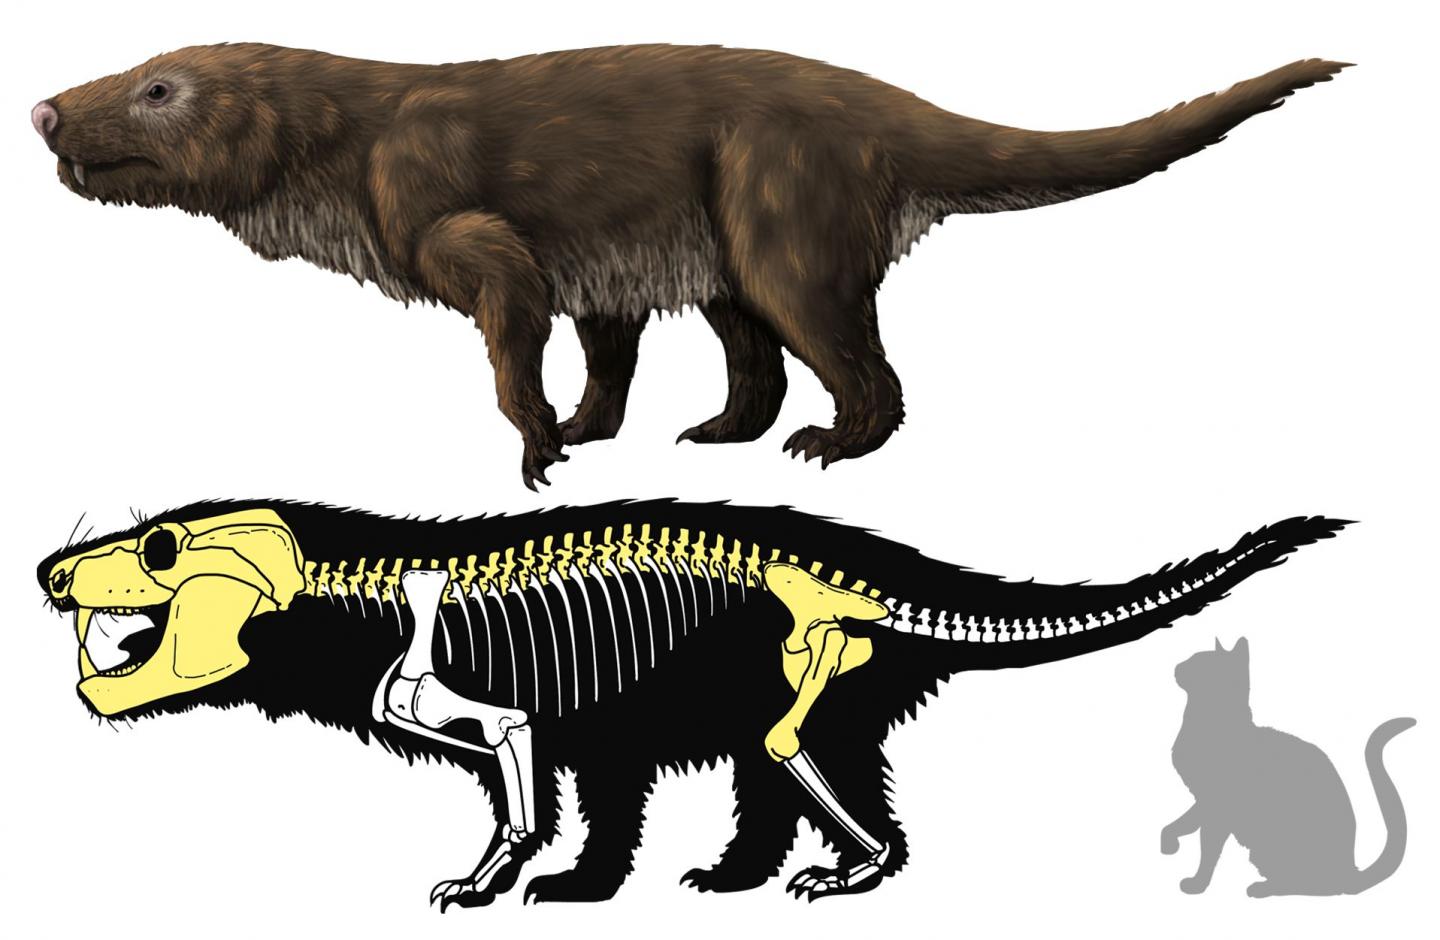 Brazilian Carnivorous Mammal-Like Reptile Fossil May Be New <i>Aleodon</i> Species